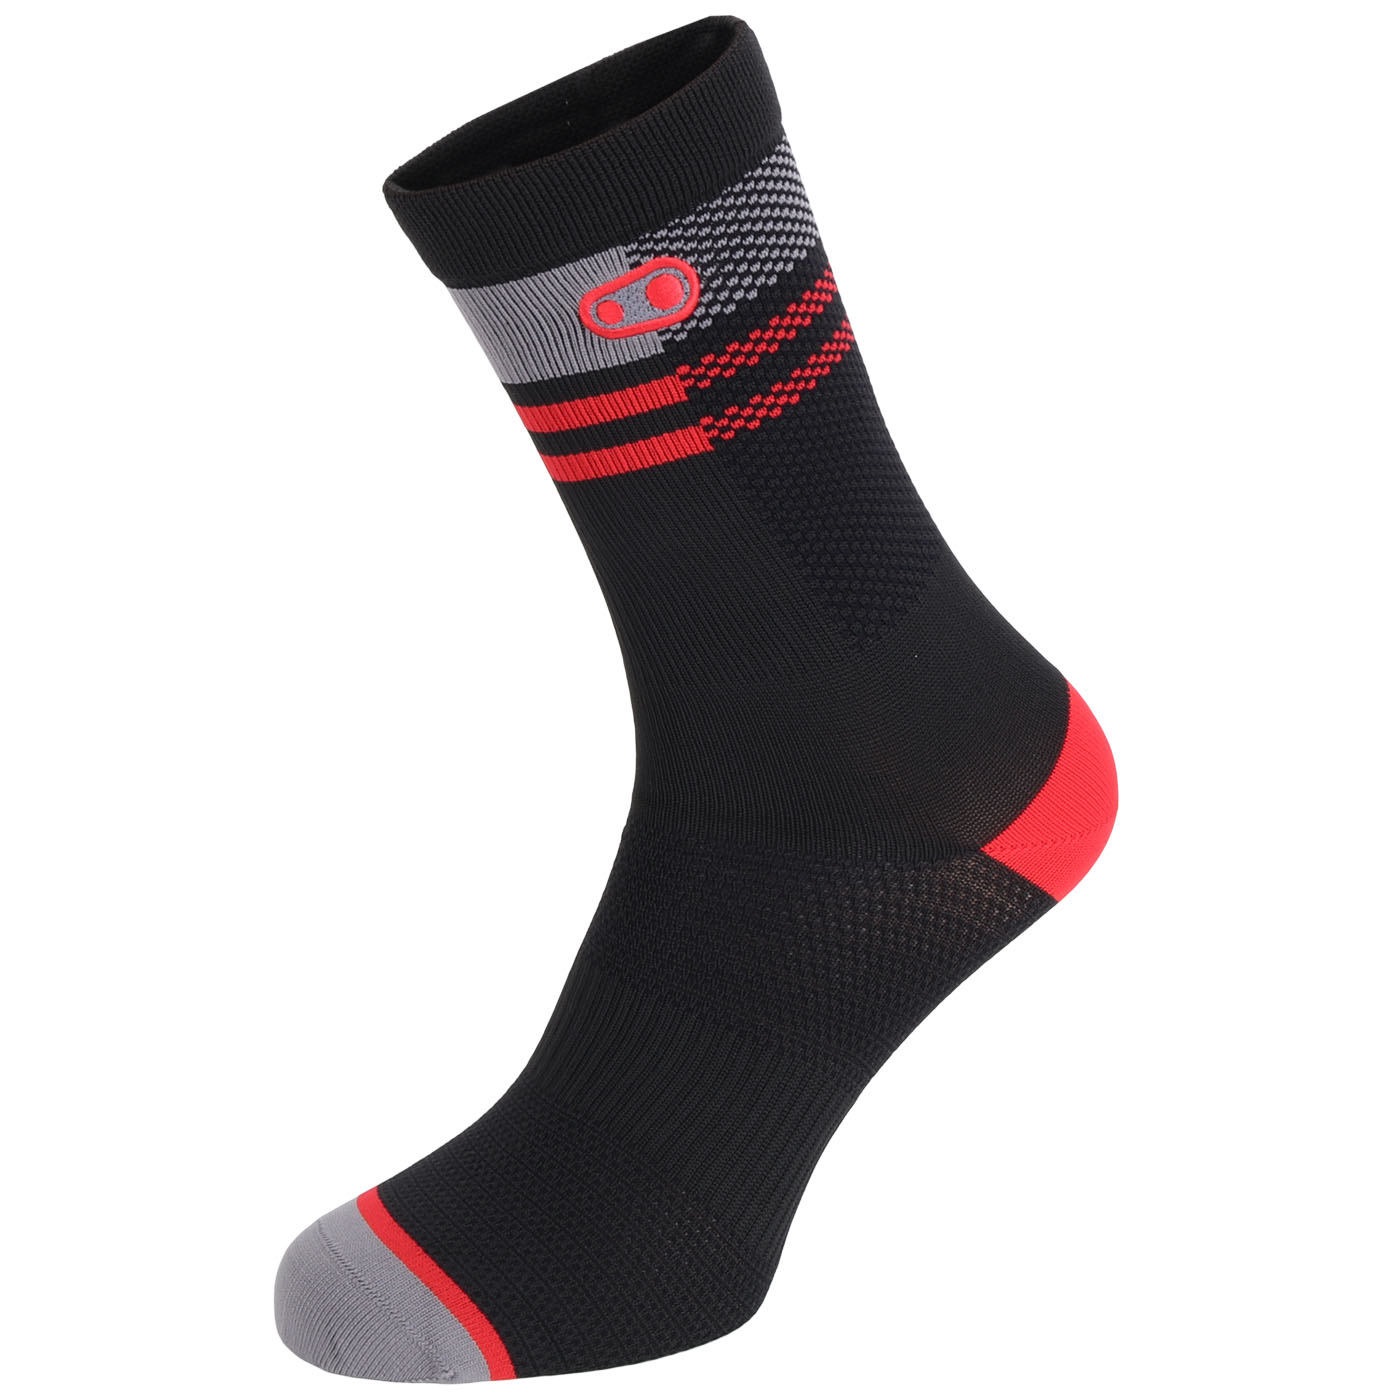 Produktbild von Crankbrothers Icon MTB Socken - schwarz/rot/grau